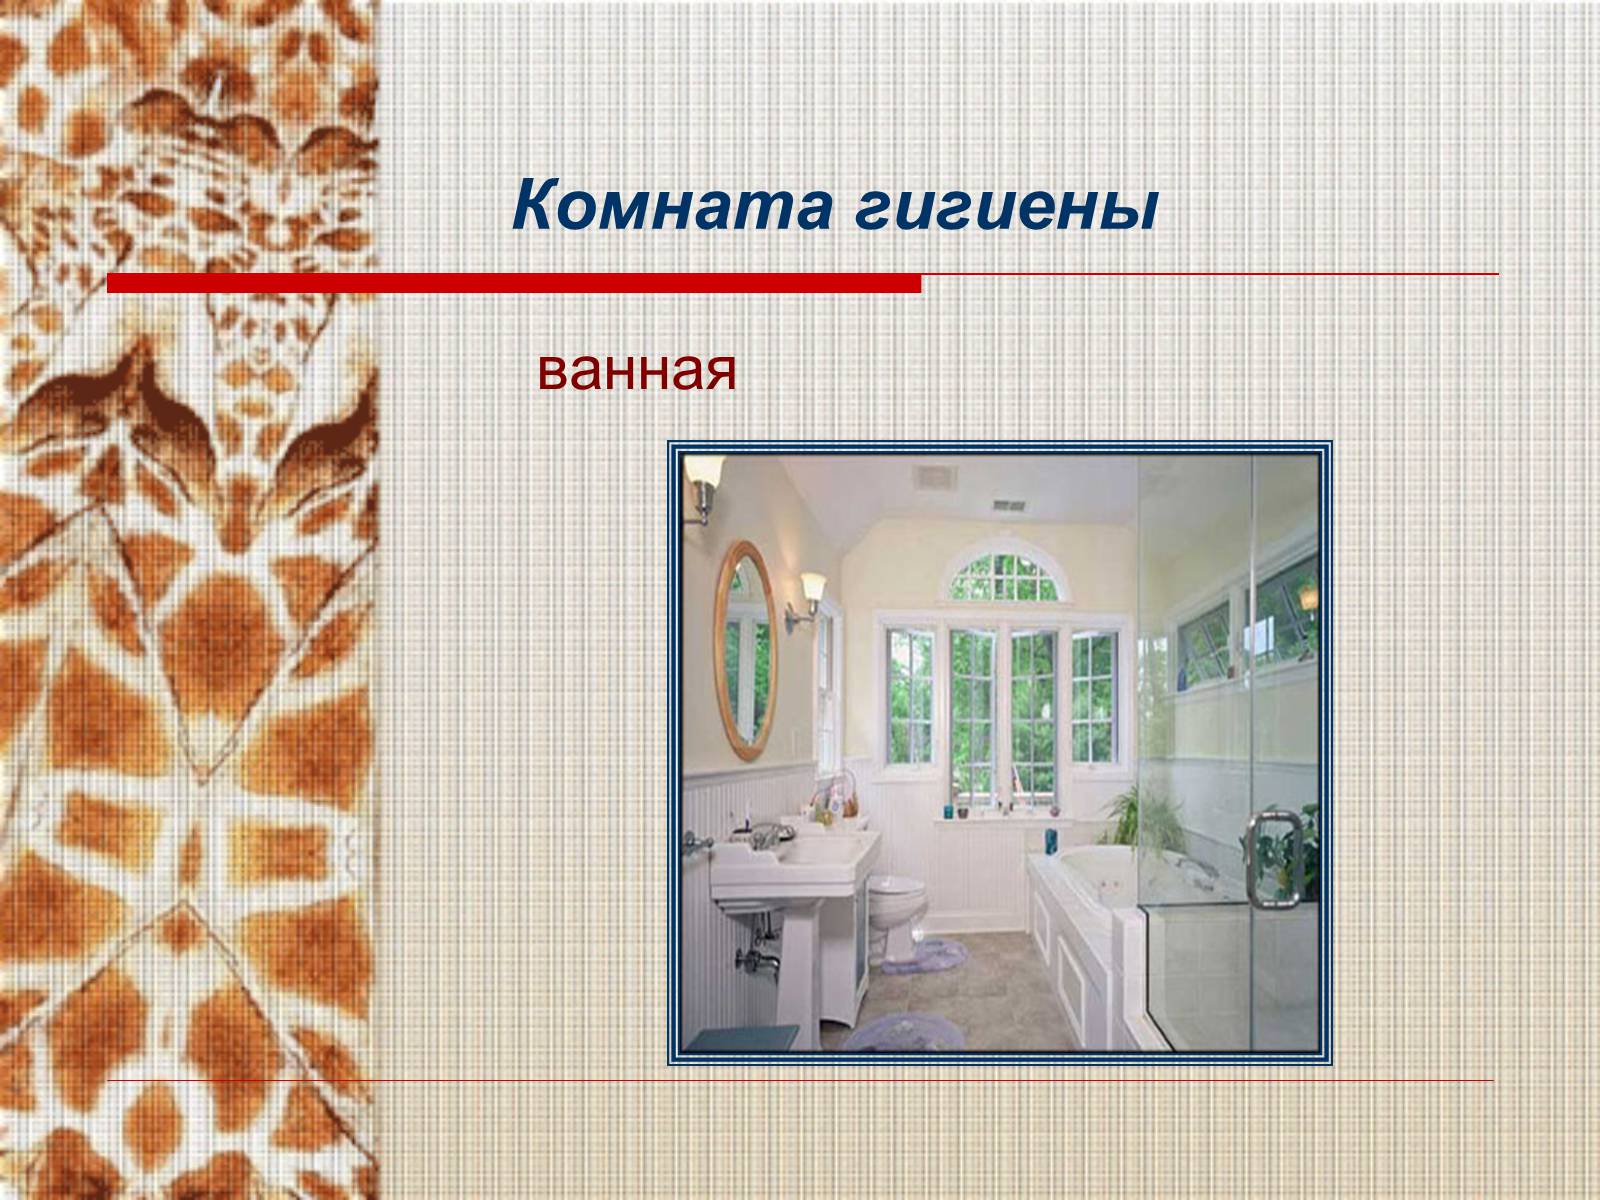 Презентация для ванной комнаты